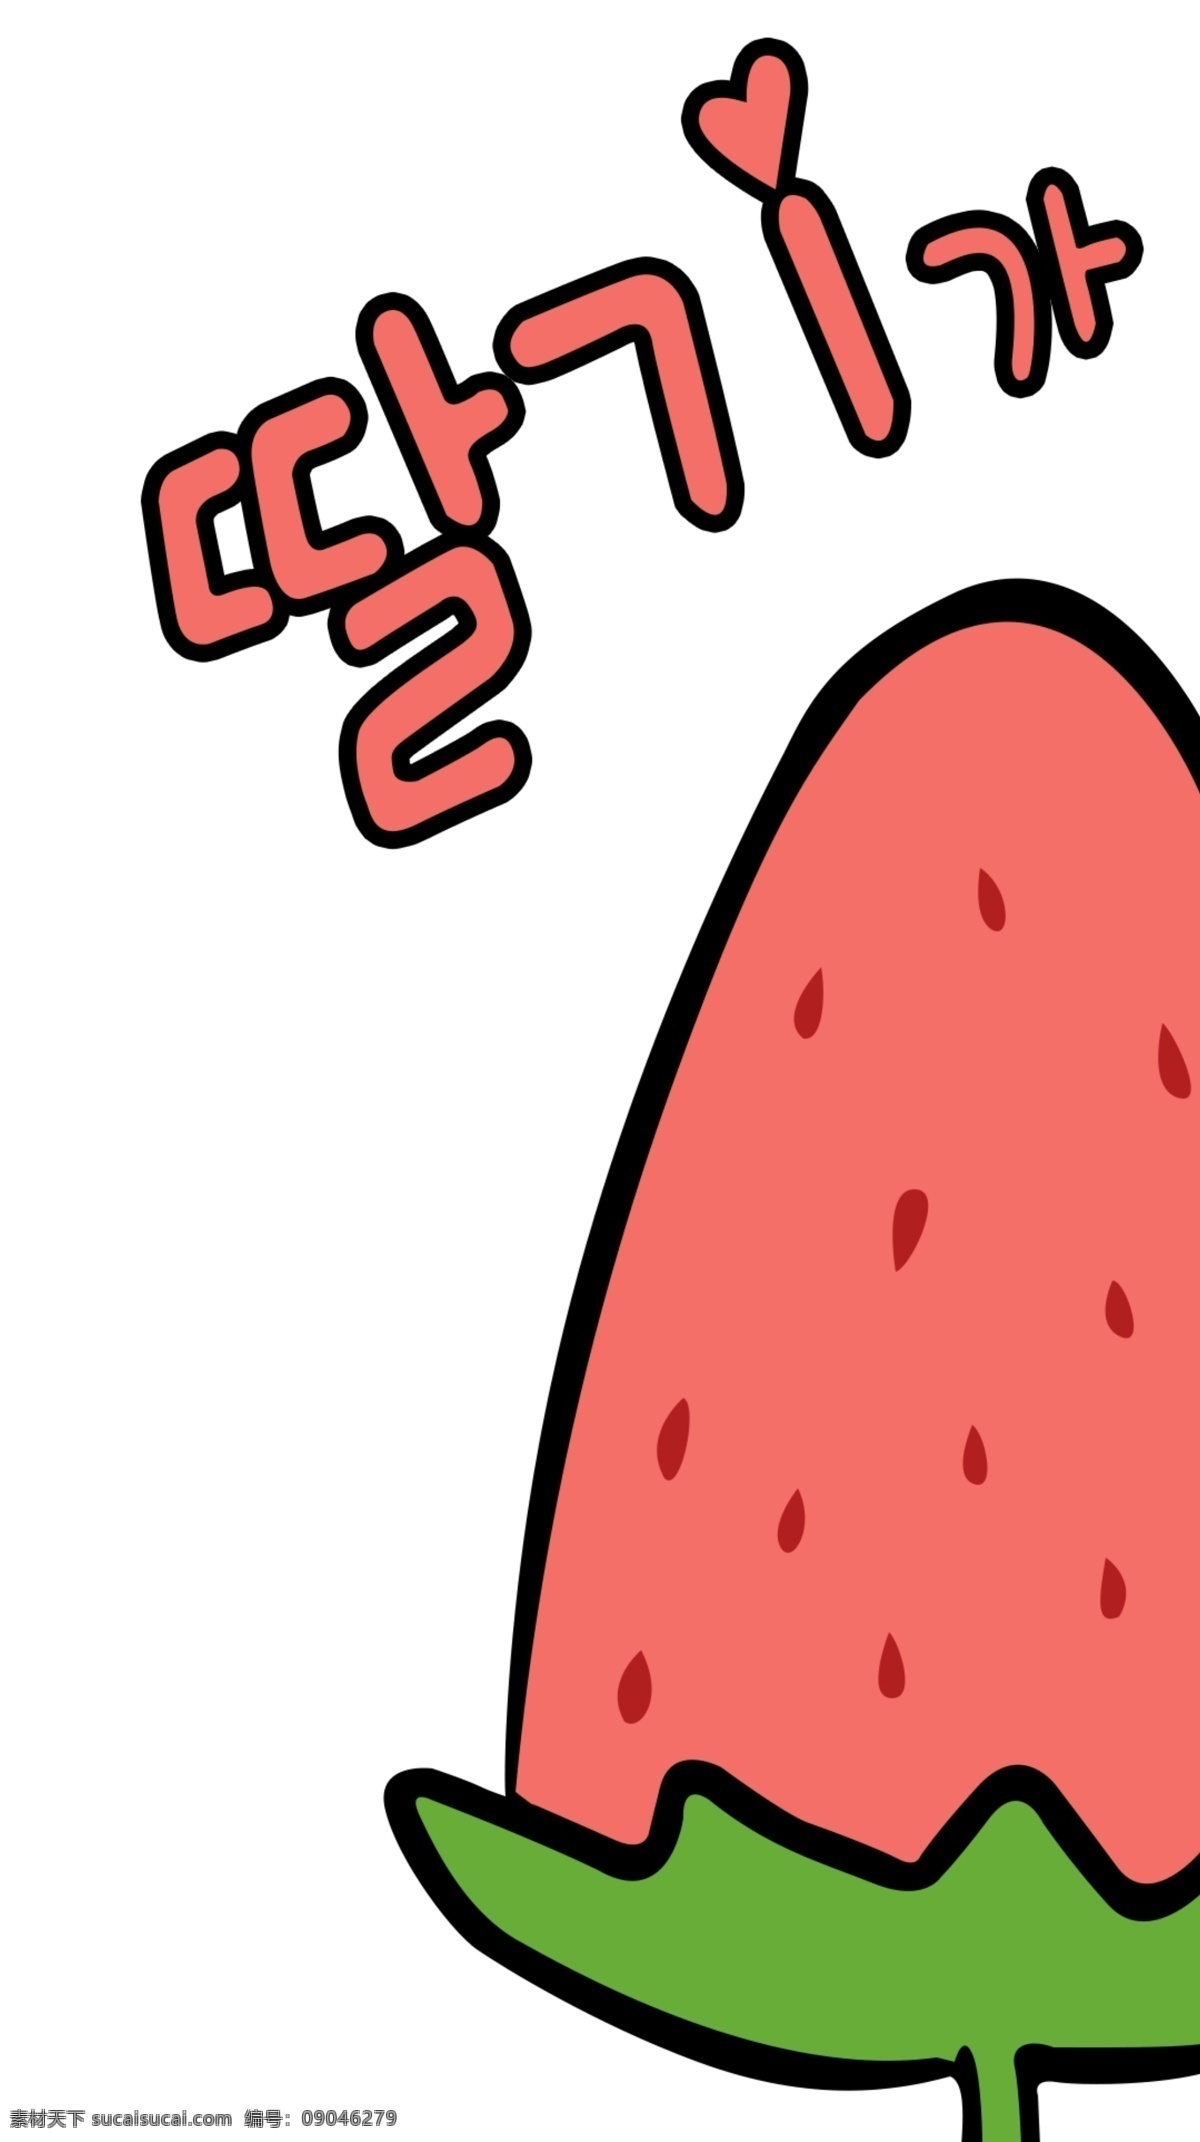 草莓漫画 草莓 卡通草莓 手机壳图案 韩语草莓 卡通图 动漫动画 白色